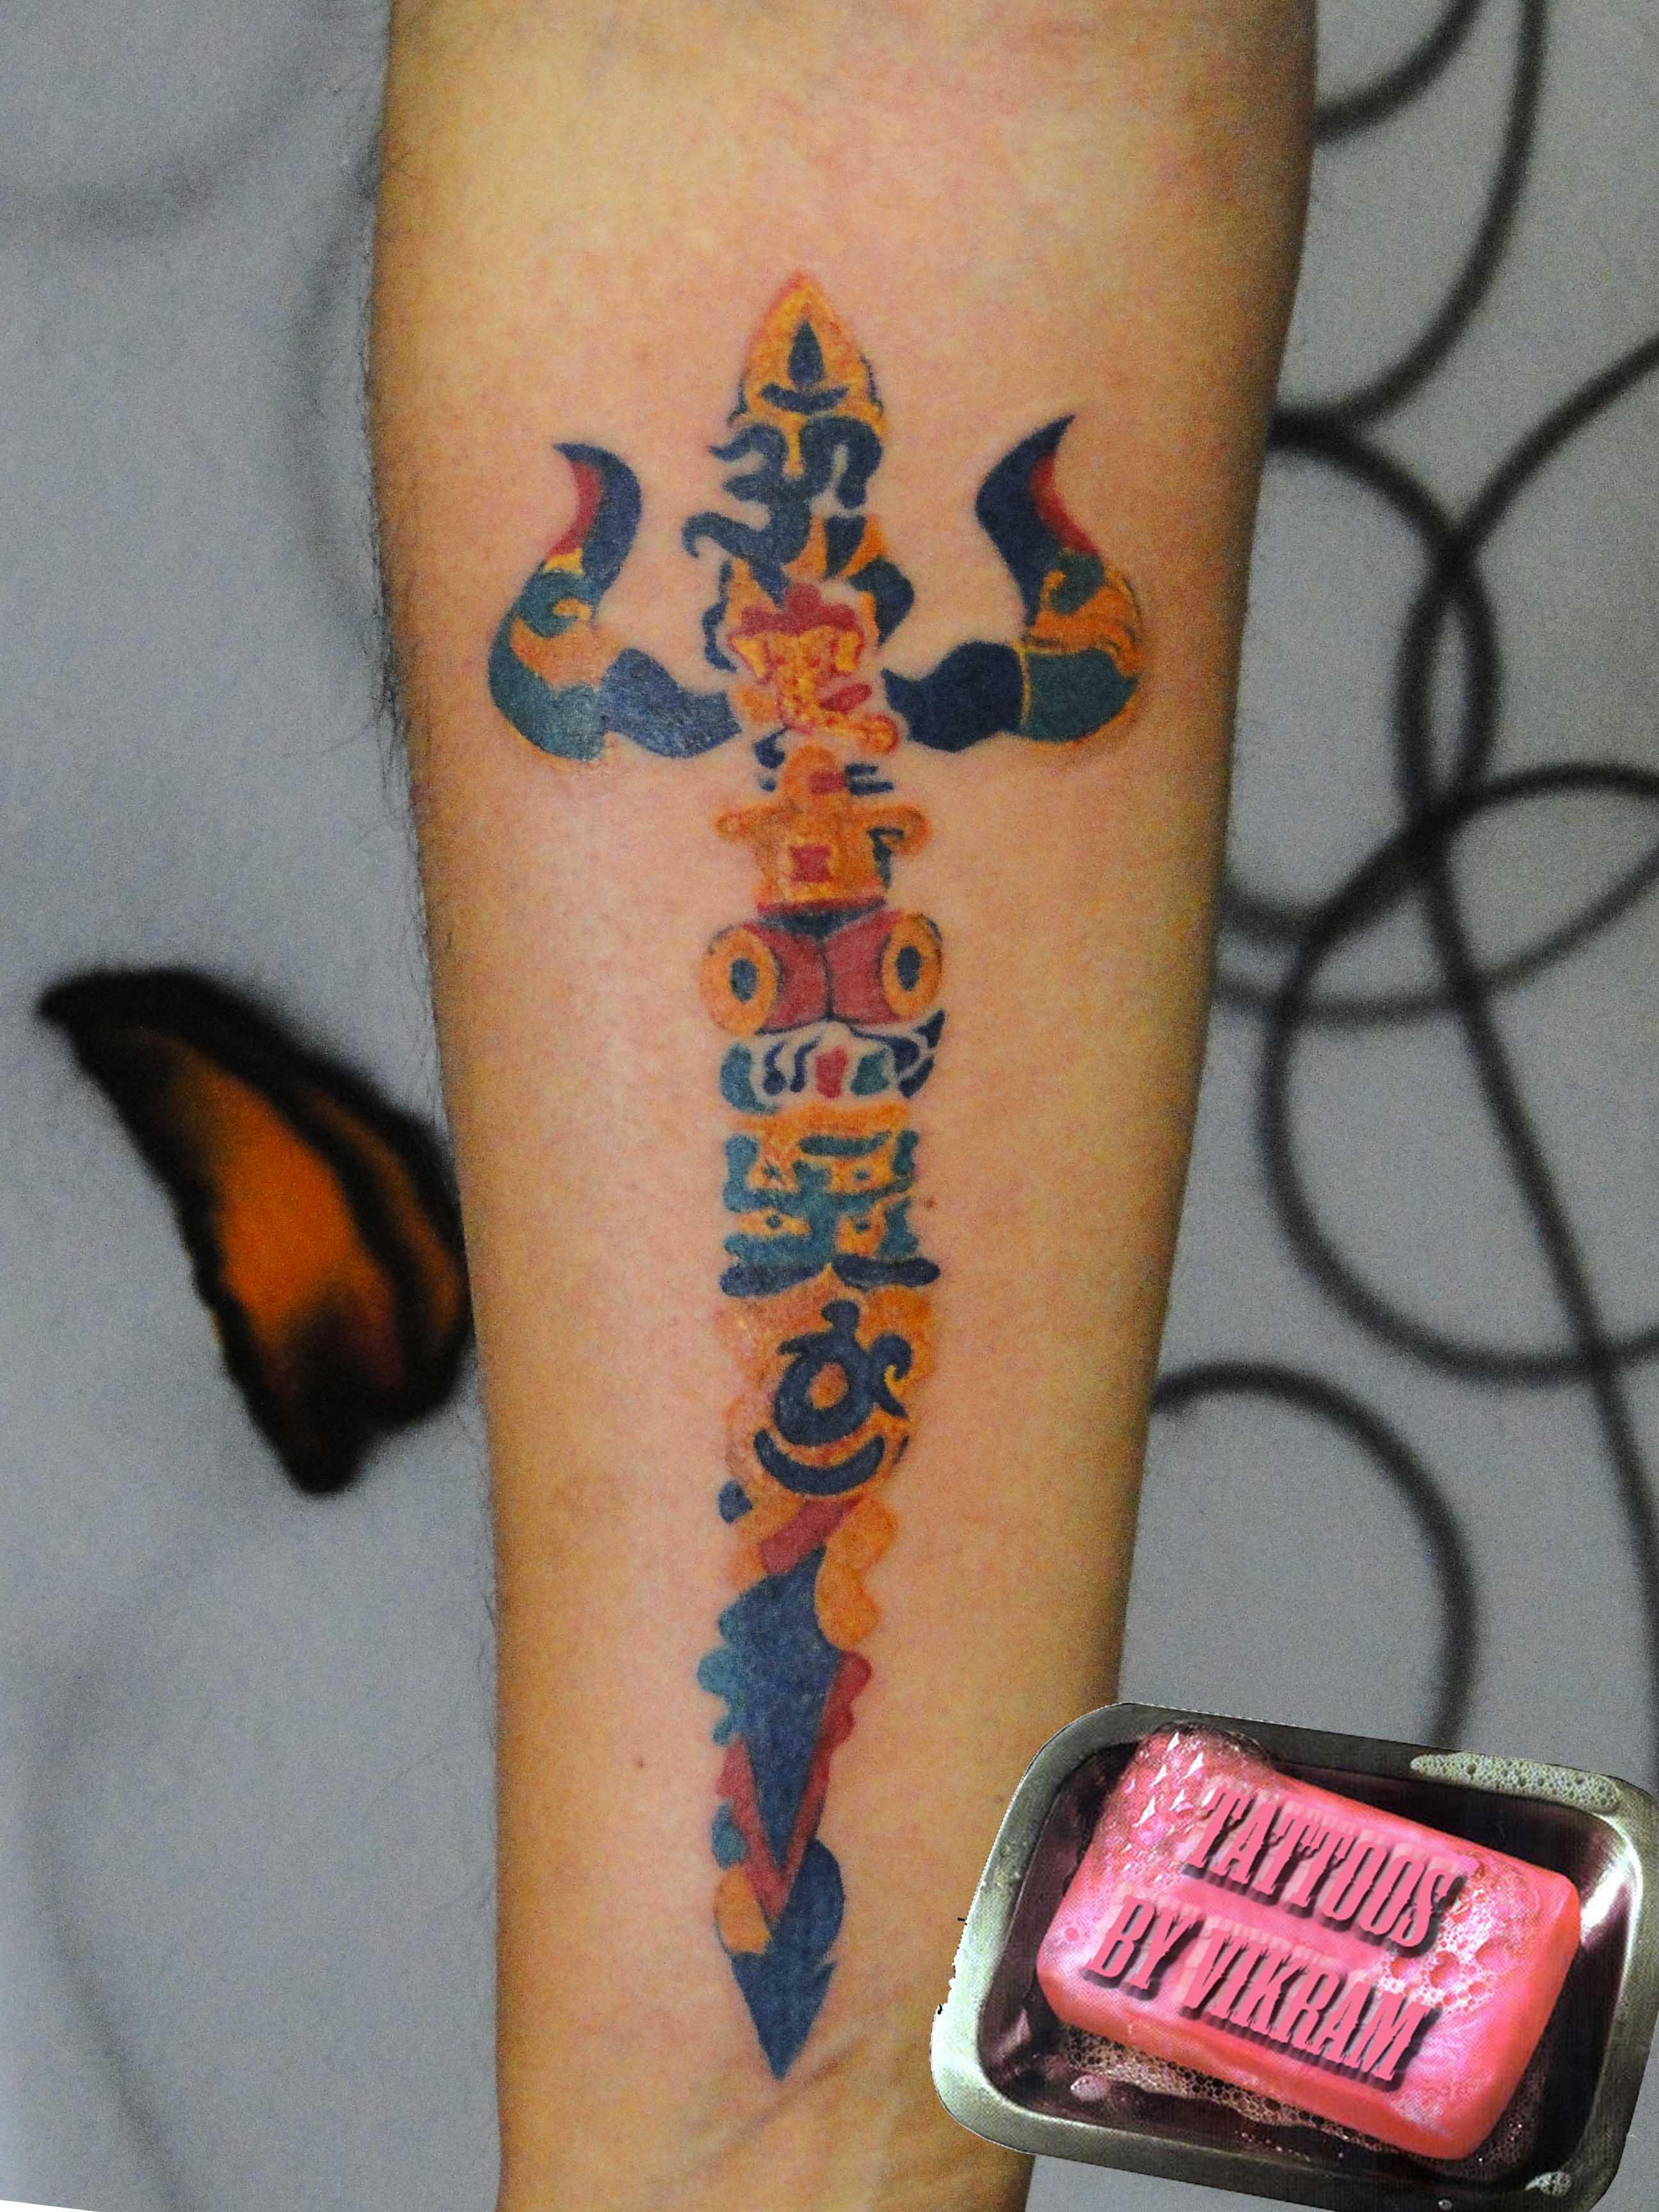 Shiva Trishul Tattoo Color - 2592x3456 Wallpaper 